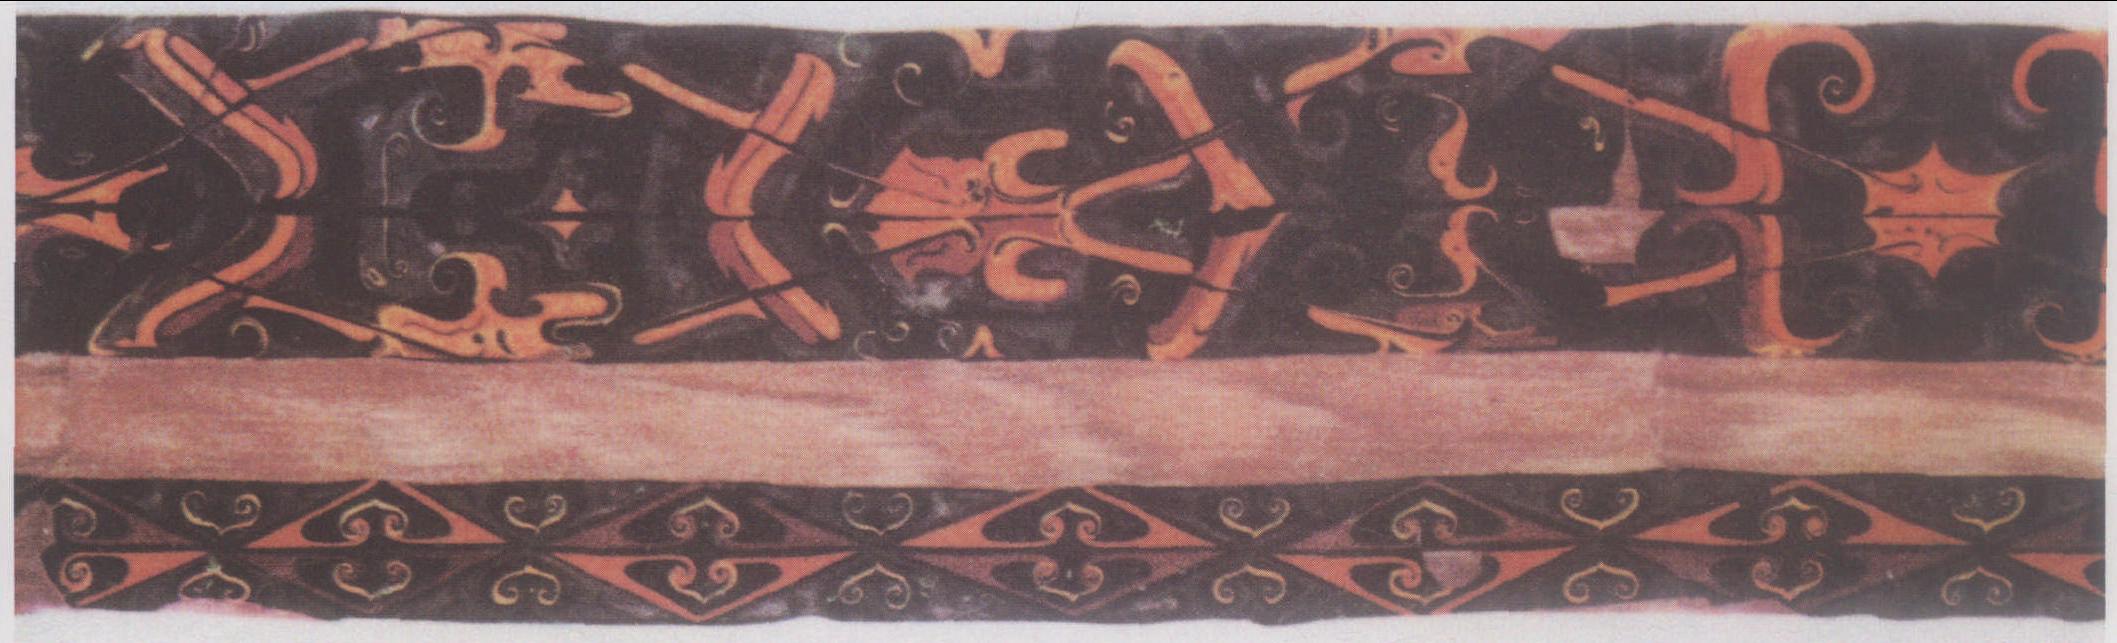 1 河南信阳战国·楚墓出土的瑟首彩漆绘饰的花边纹样